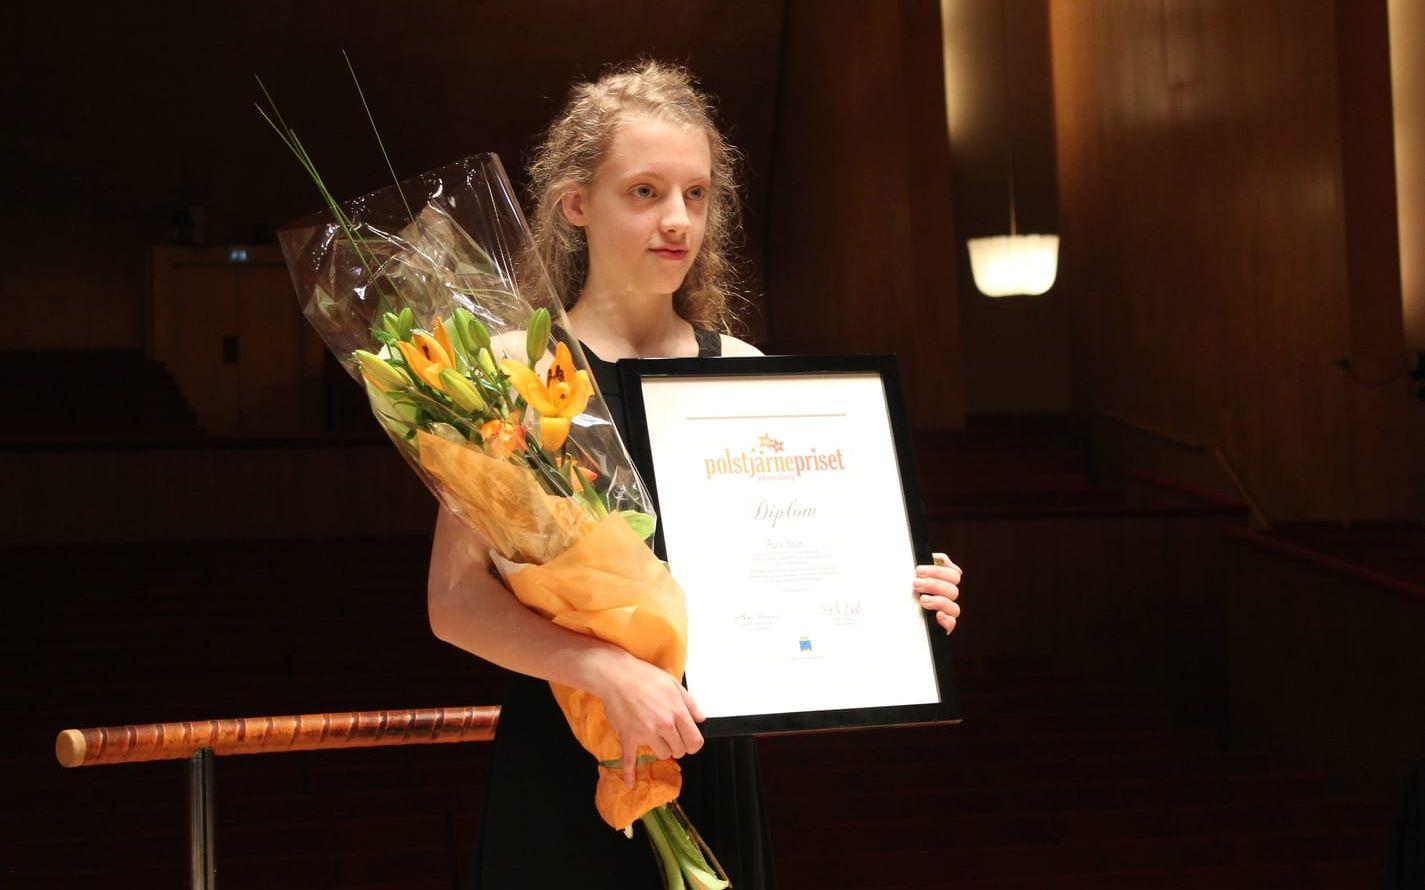 Violinisten Alva Holm tog hem segern när den stora finalen av Polstjärnepriset hölls på lördagen.